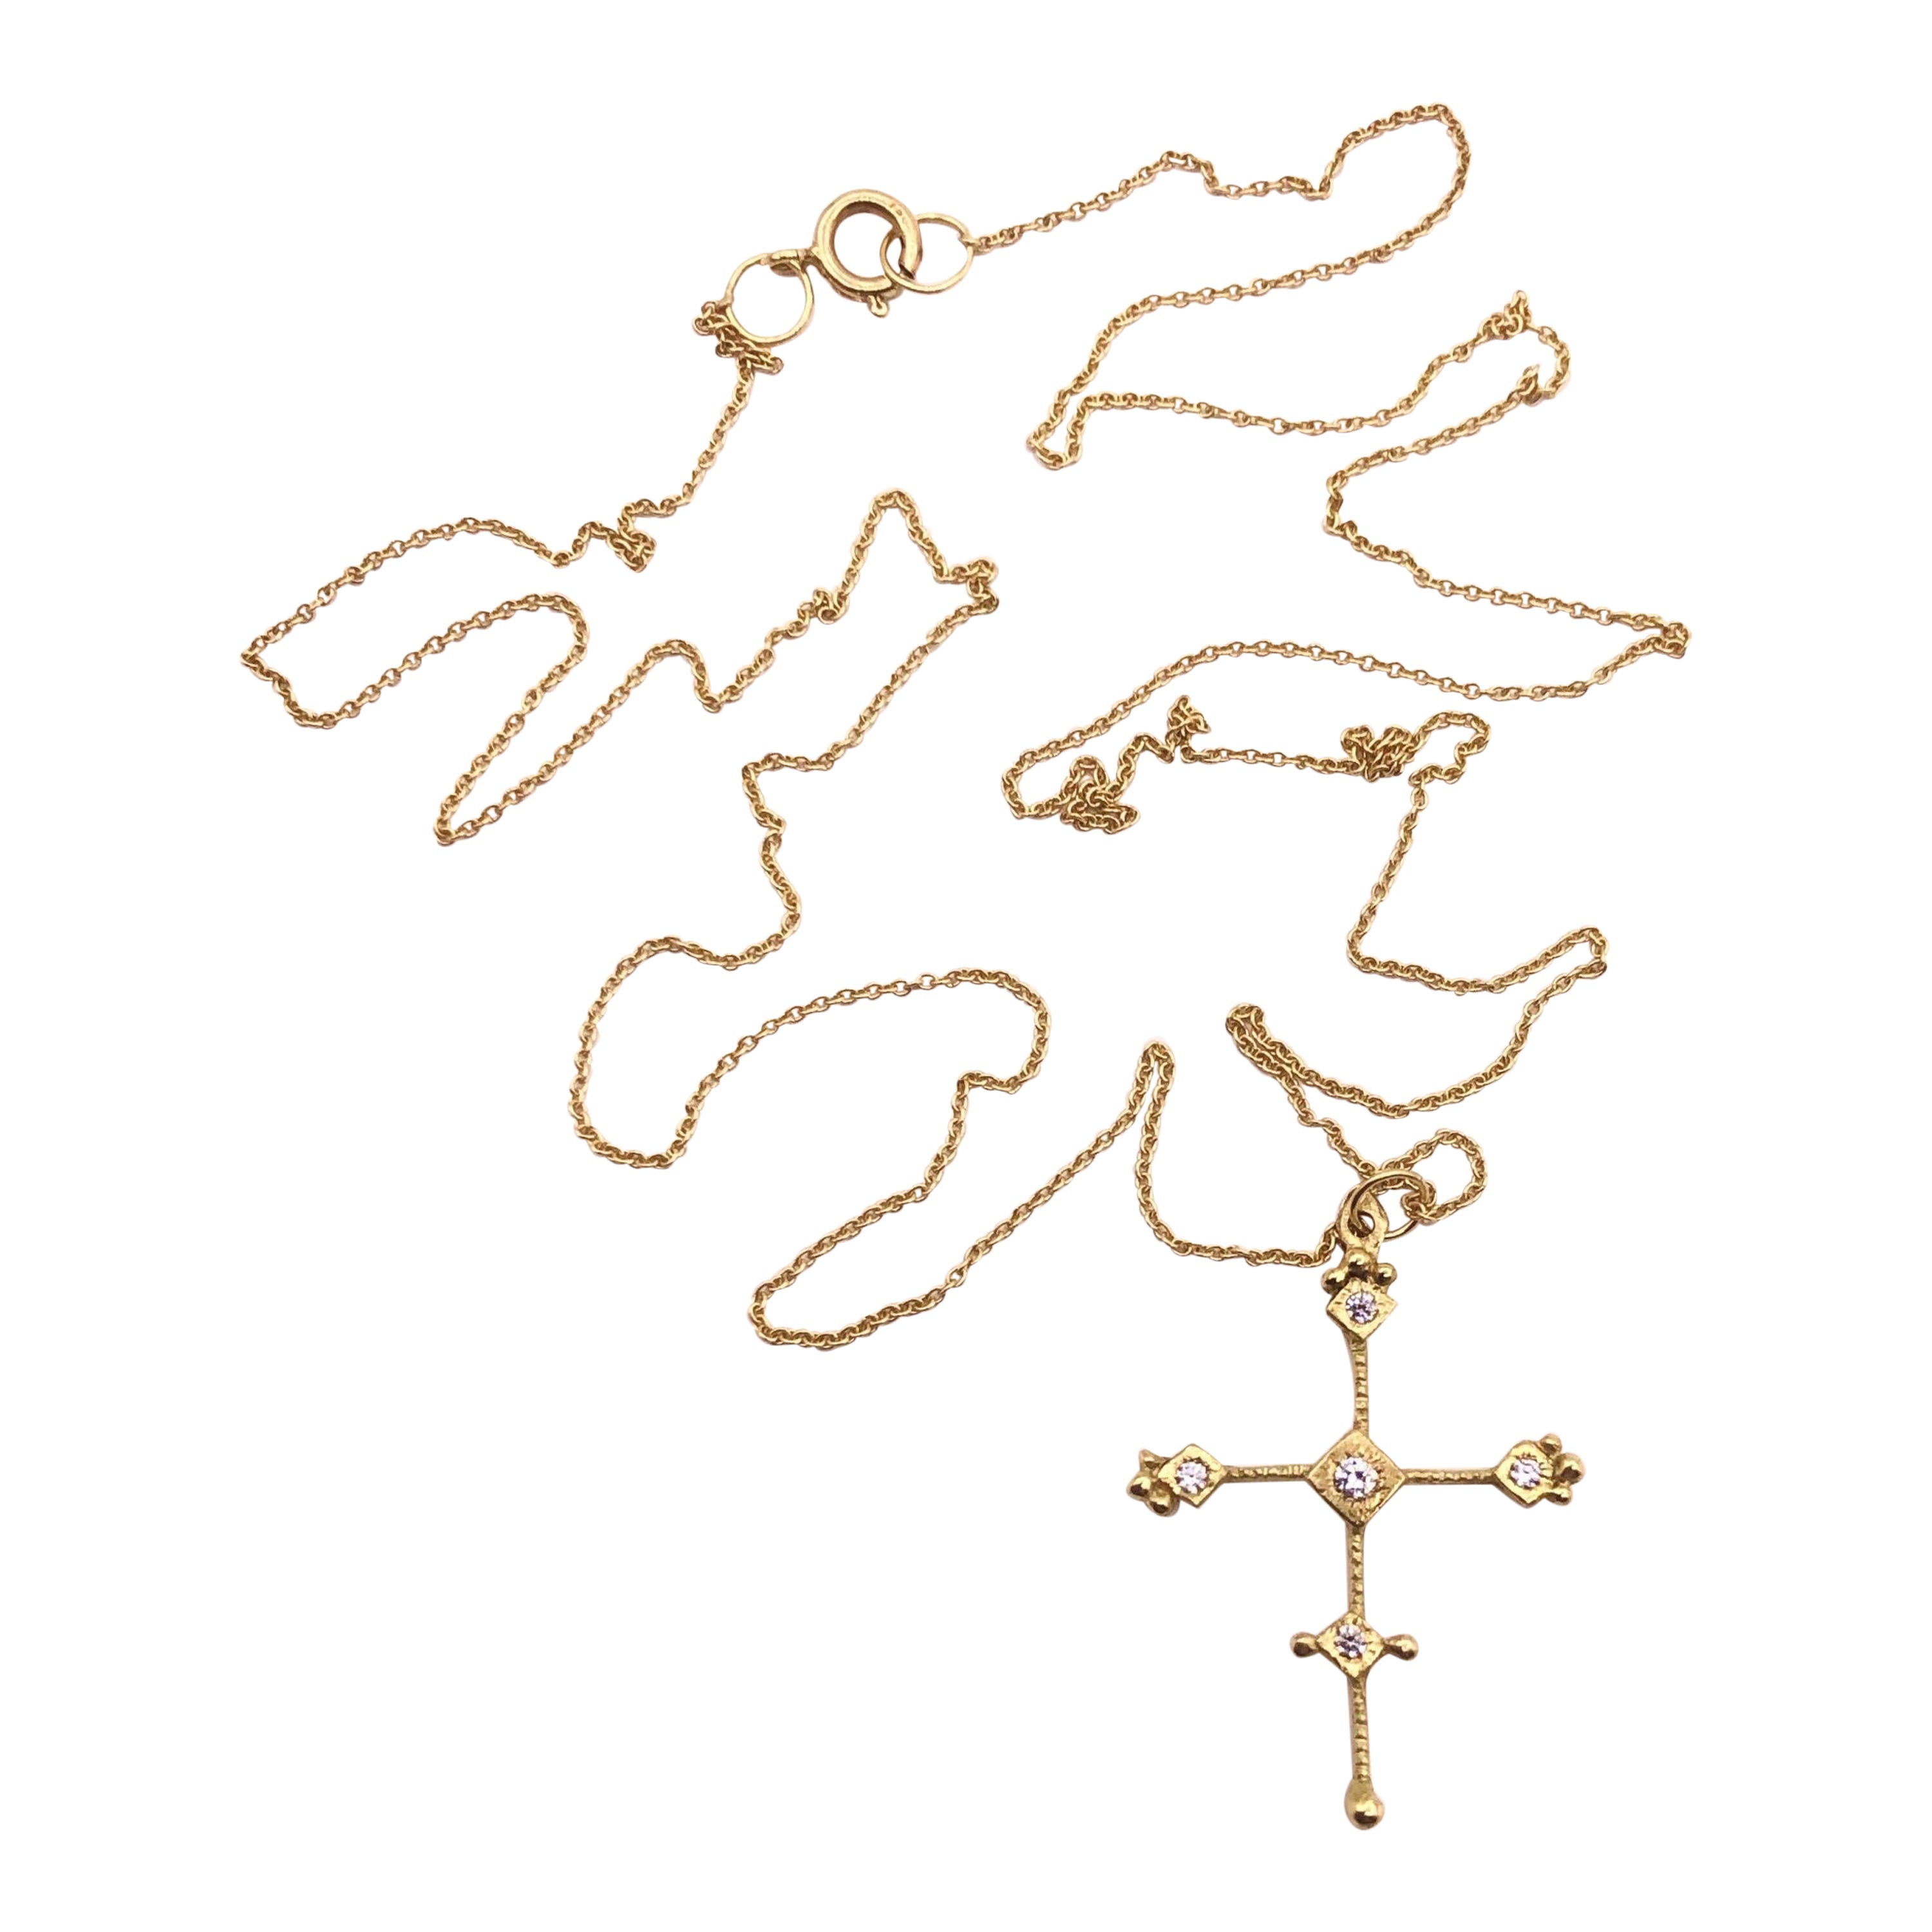 RIMA JEWELS’ Byzantine Ojo De Dios 18k Gold Cross Necklace Set with Diamonds